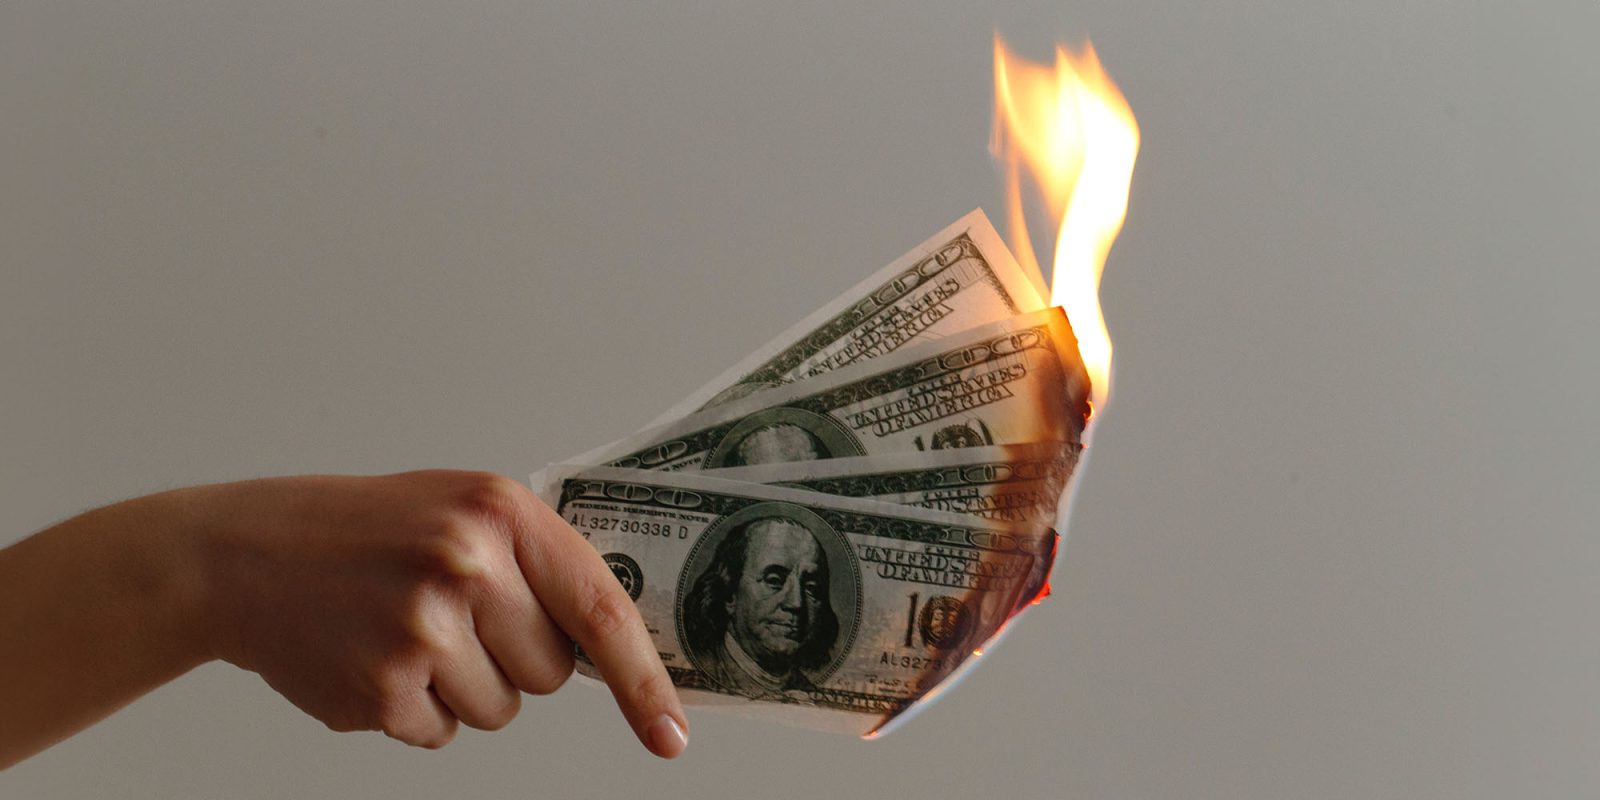 Subscription streaming spend | Burning $100 bills